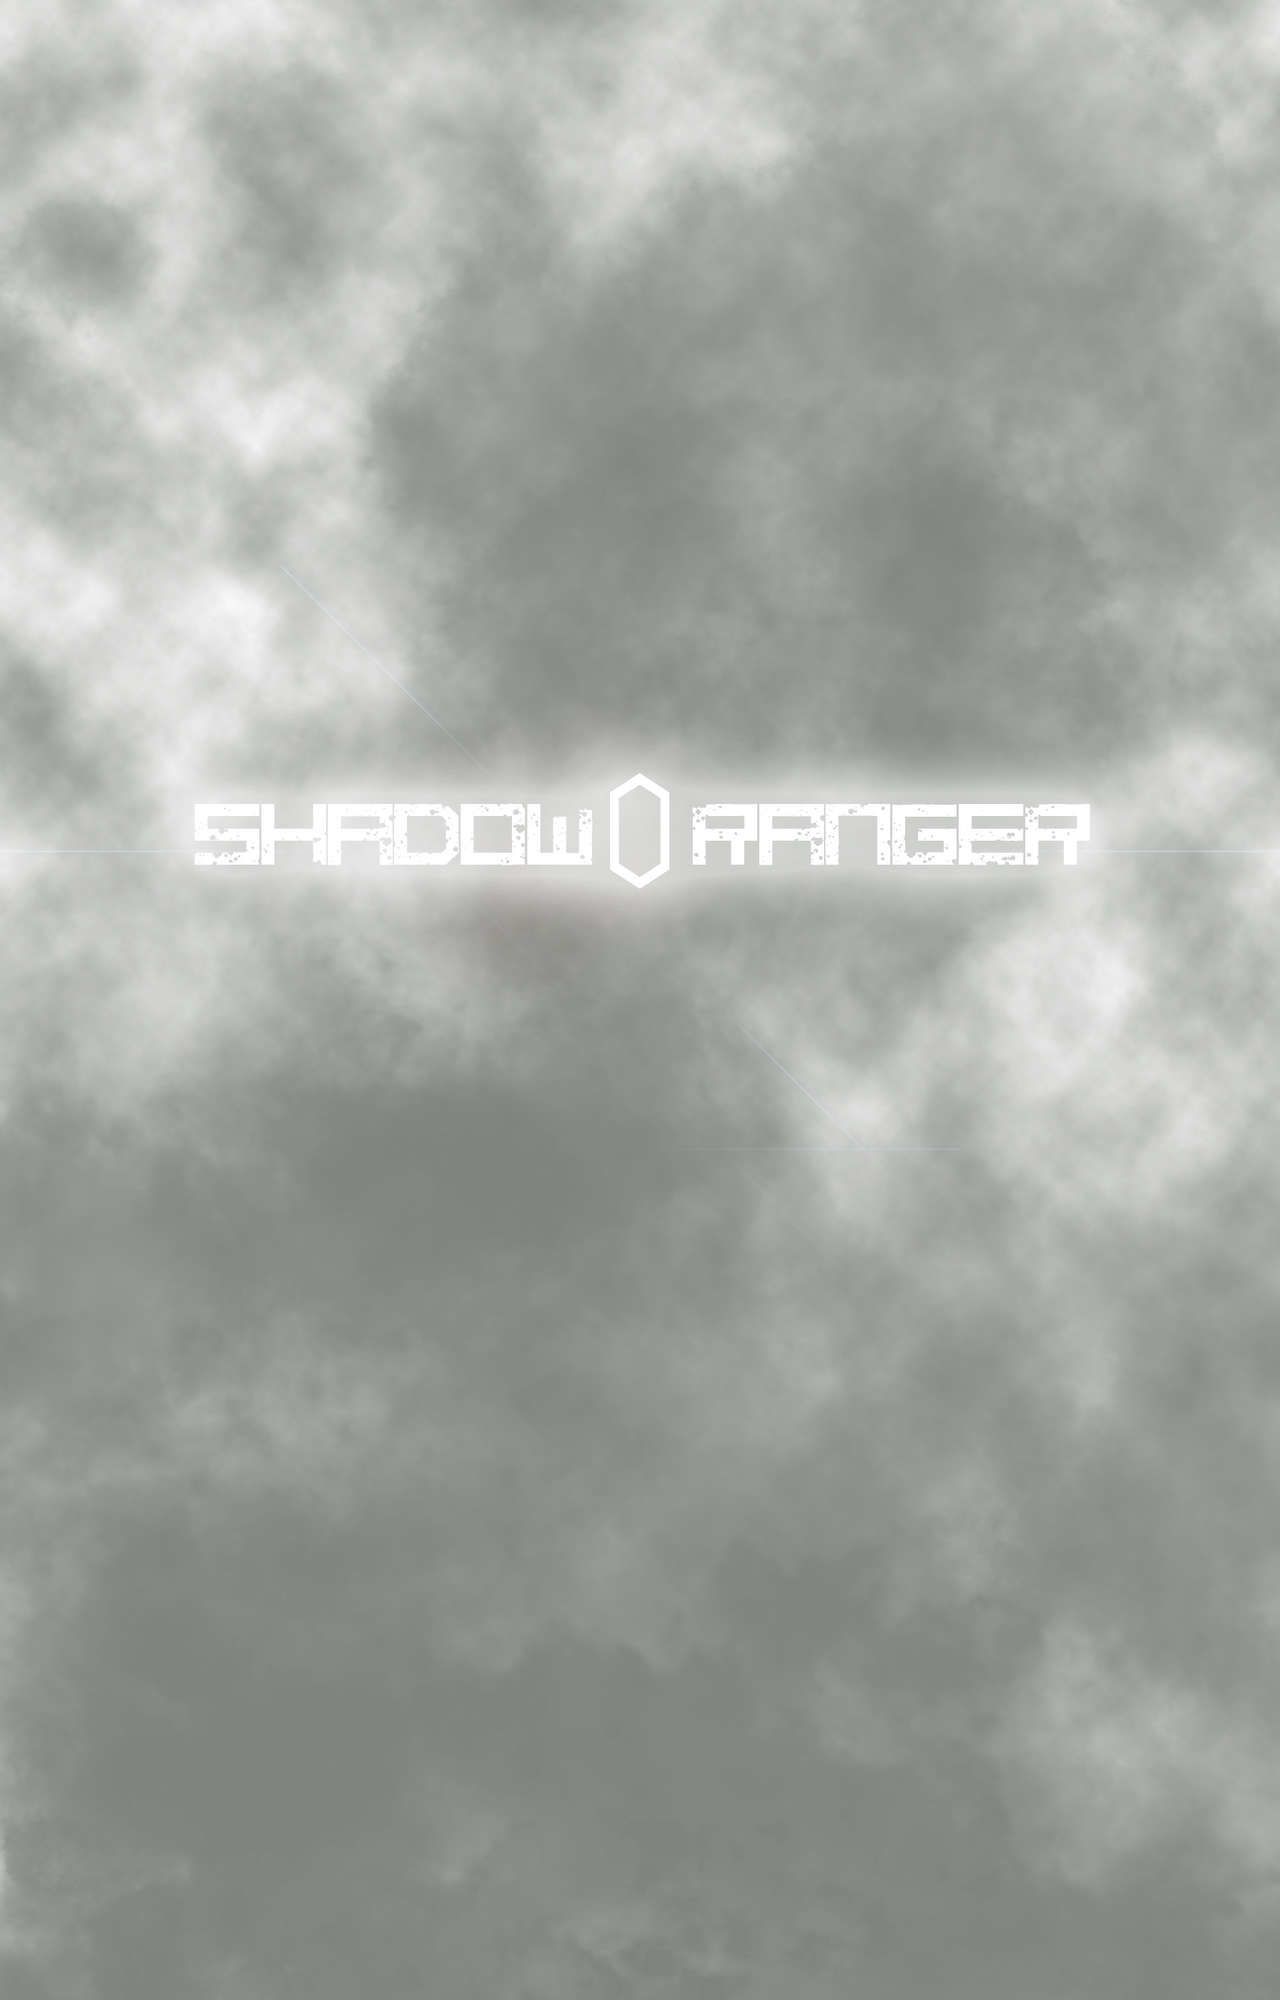 ombra ranger zero parte 1: il inizio di il fine